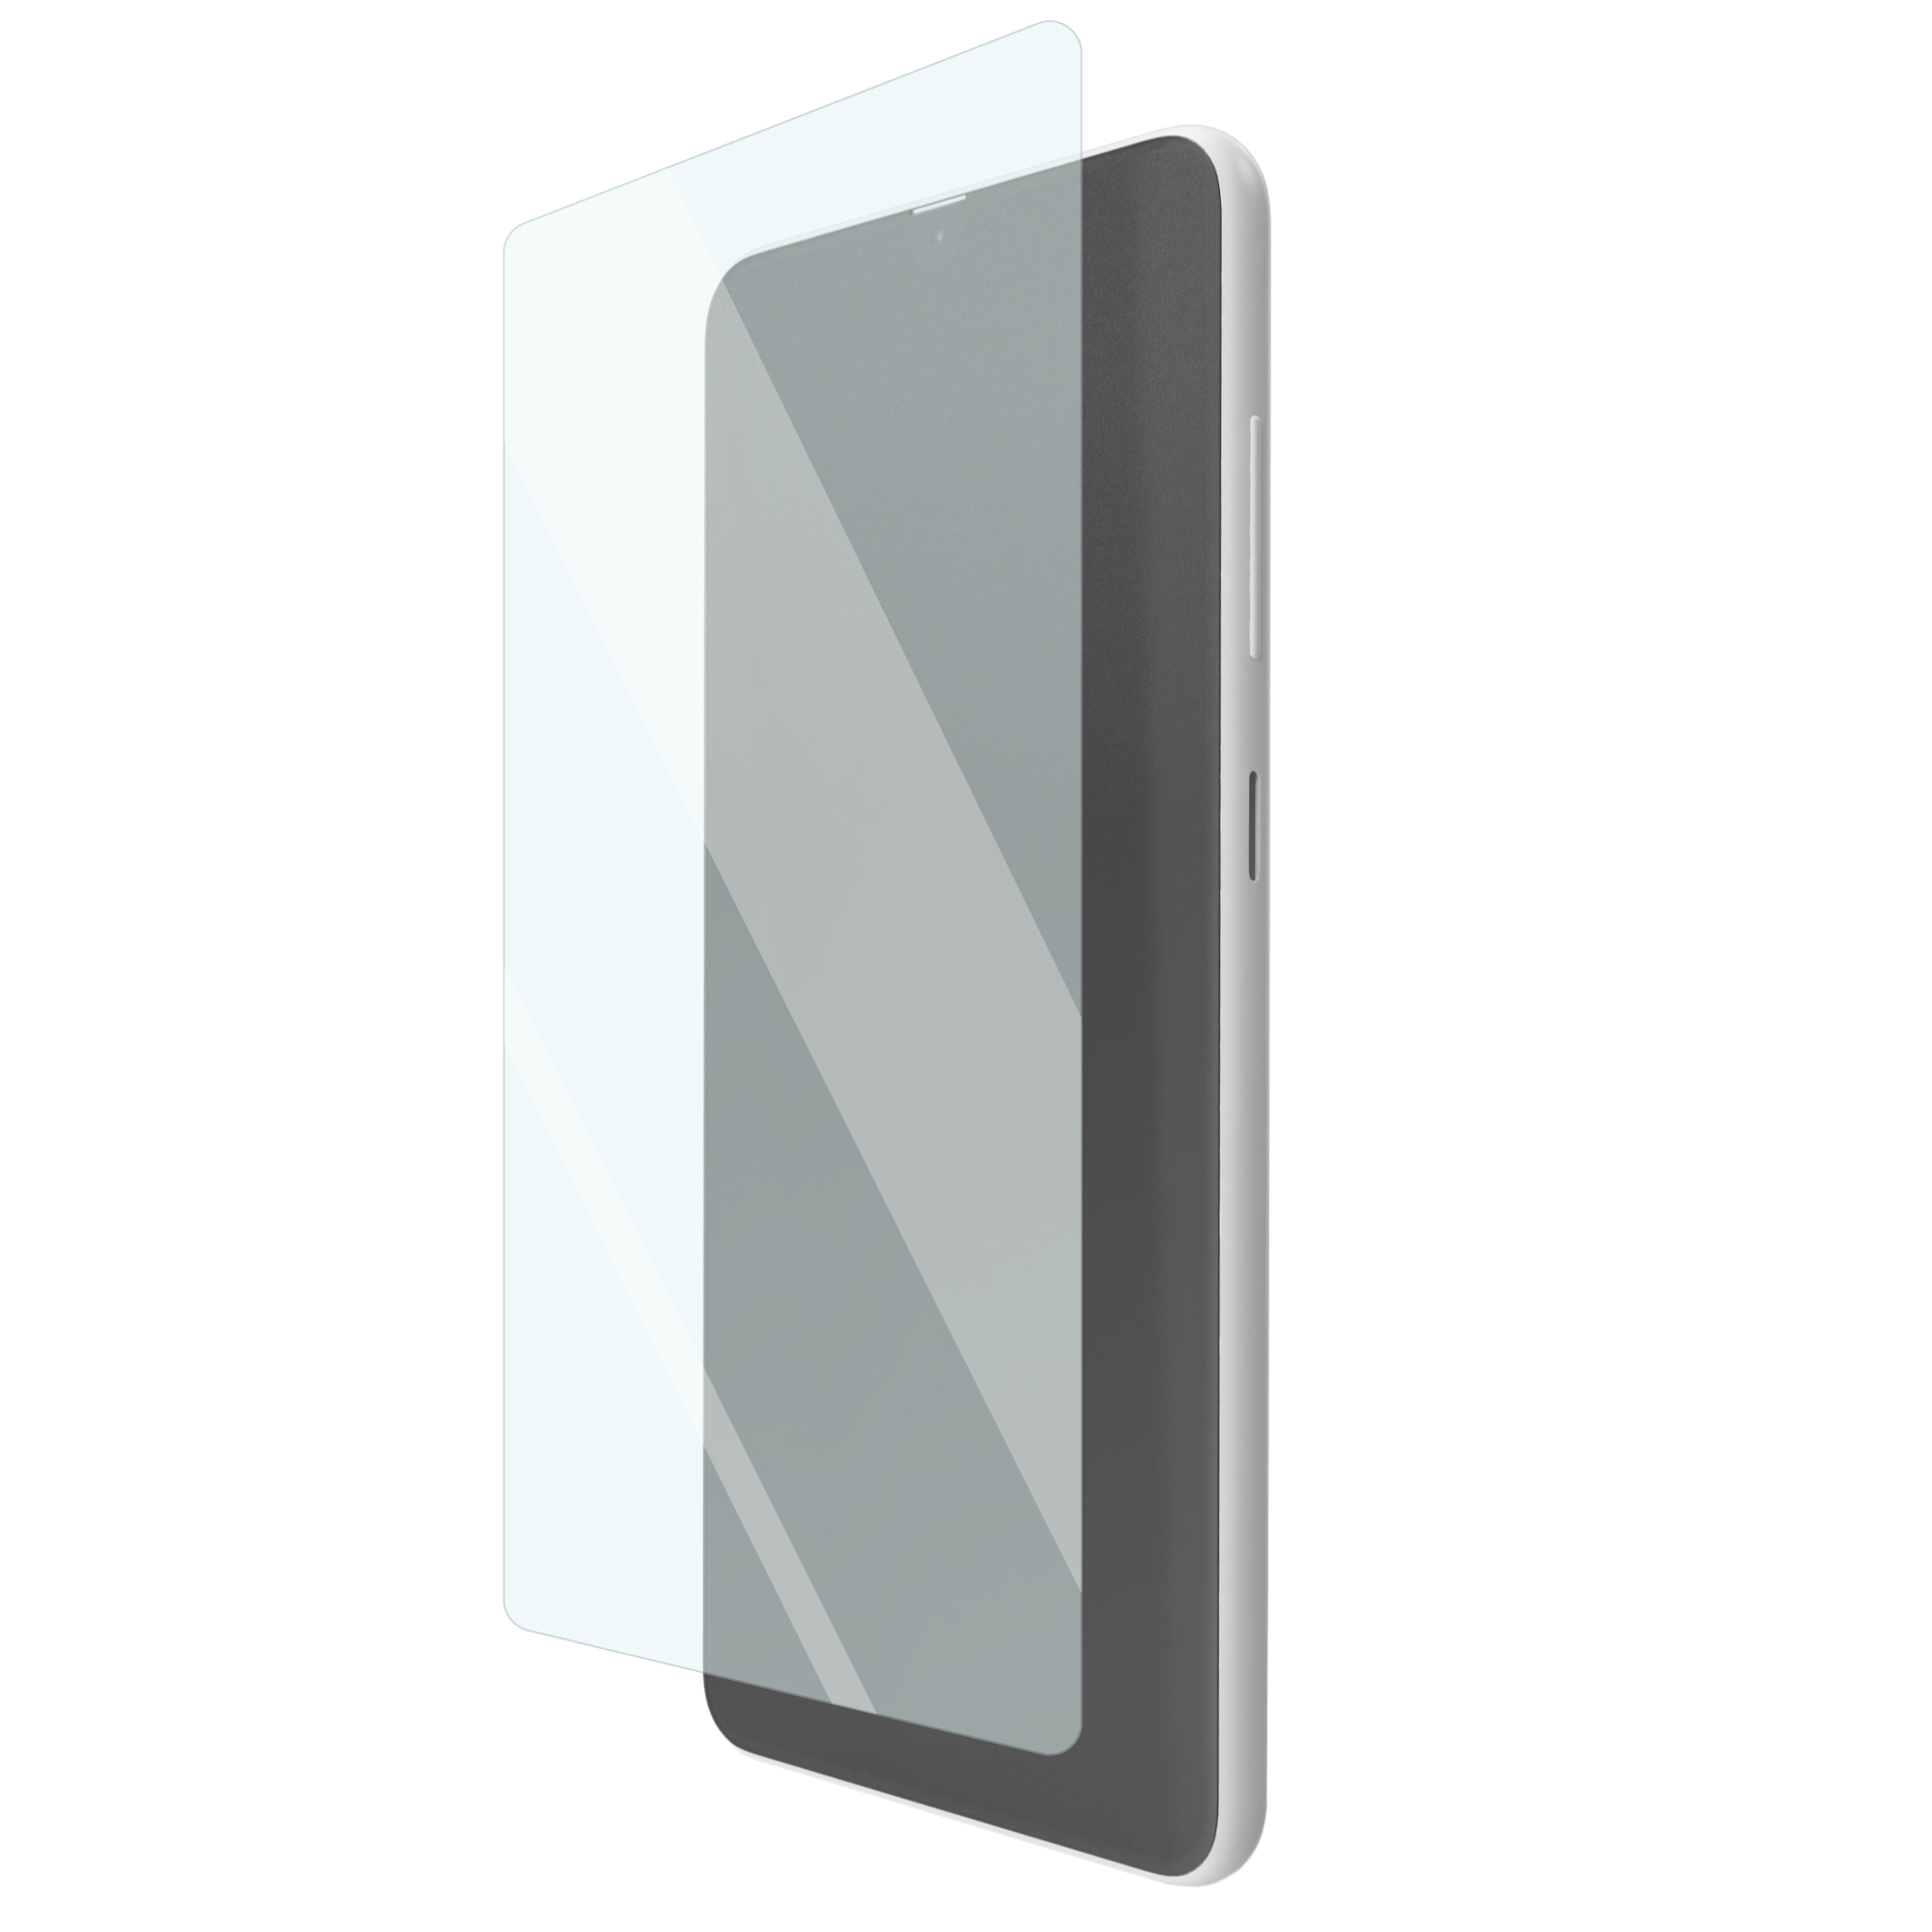 Folie de protectie silicon ShieldUP HiTech Regenerable pentru Asus Zenfone 4 Selfie thumb